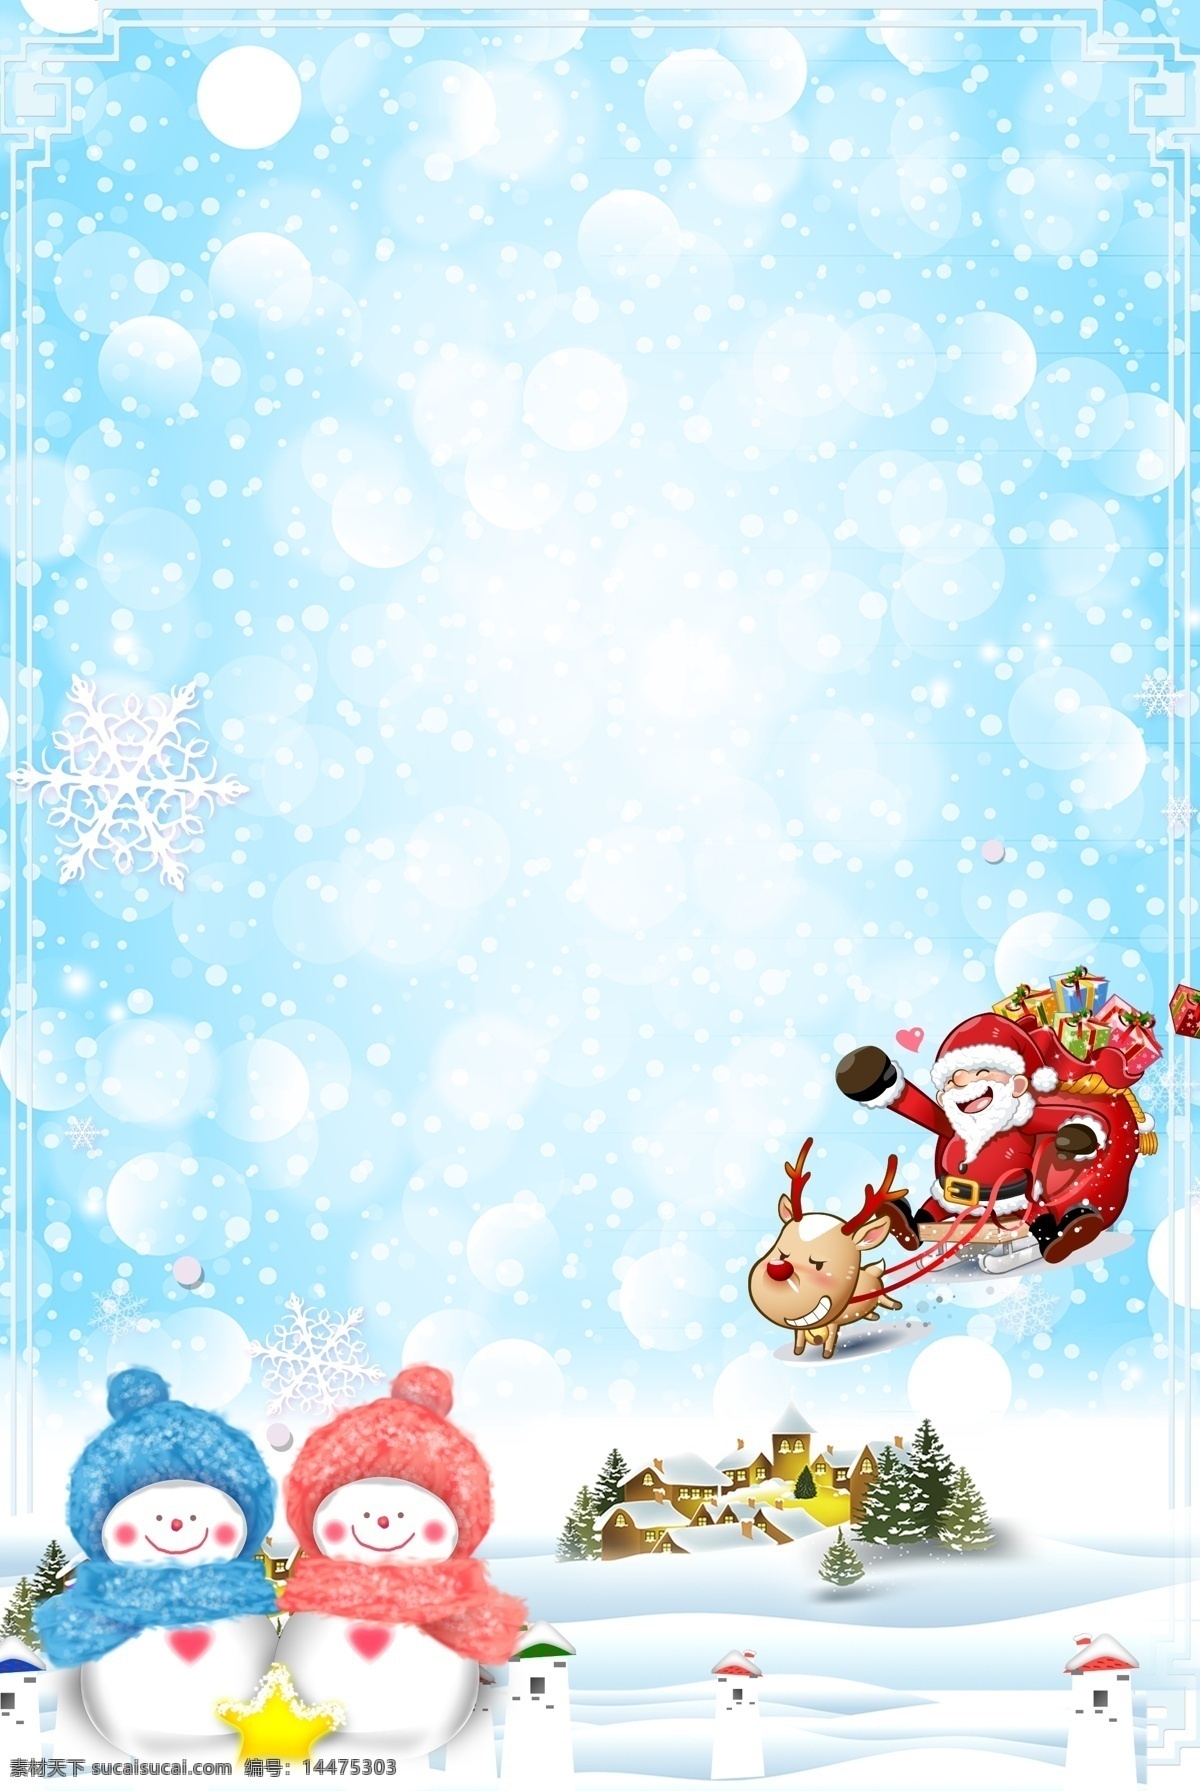 彩绘 圣诞节 专题 背景 圣诞老人 卡通背景 雪地 雪花 圣诞背景 圣诞马车 马车 麋鹿 雪人 冬季背景 下雪